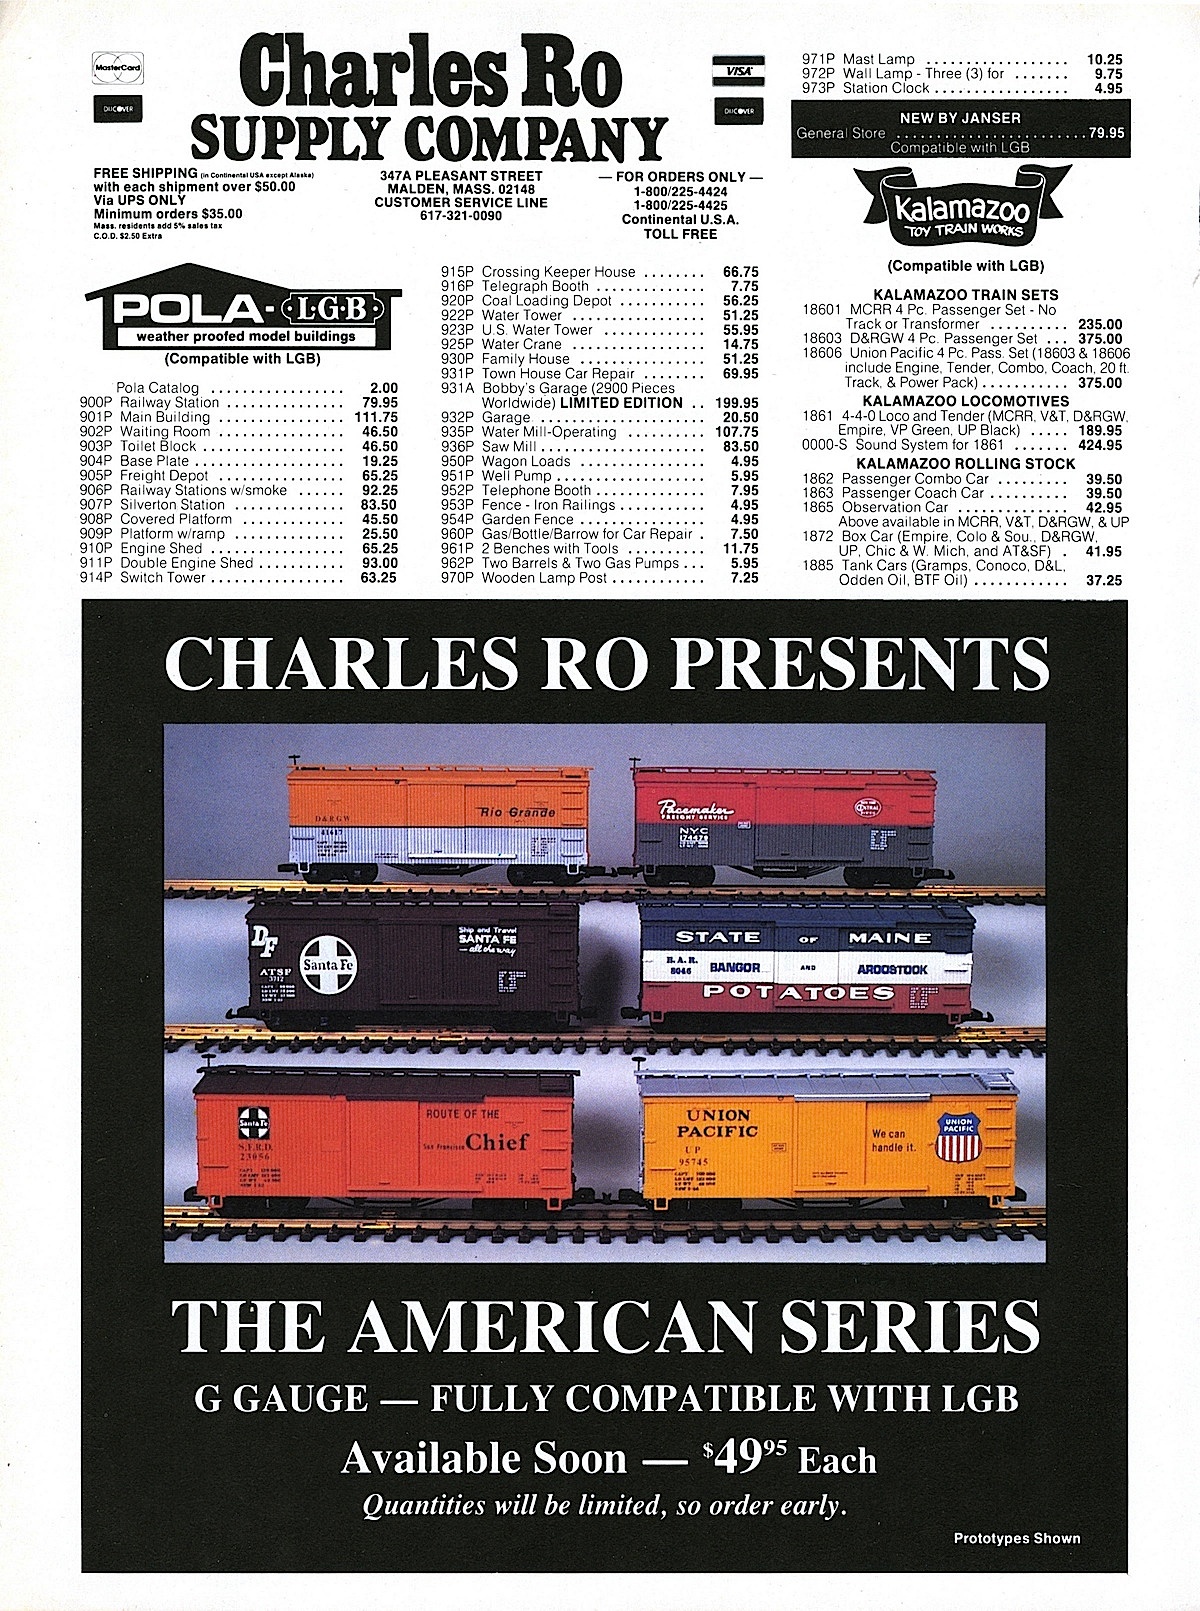 USA Trains - Neuheiten (New items) 1987 - Charles Ro Box cars